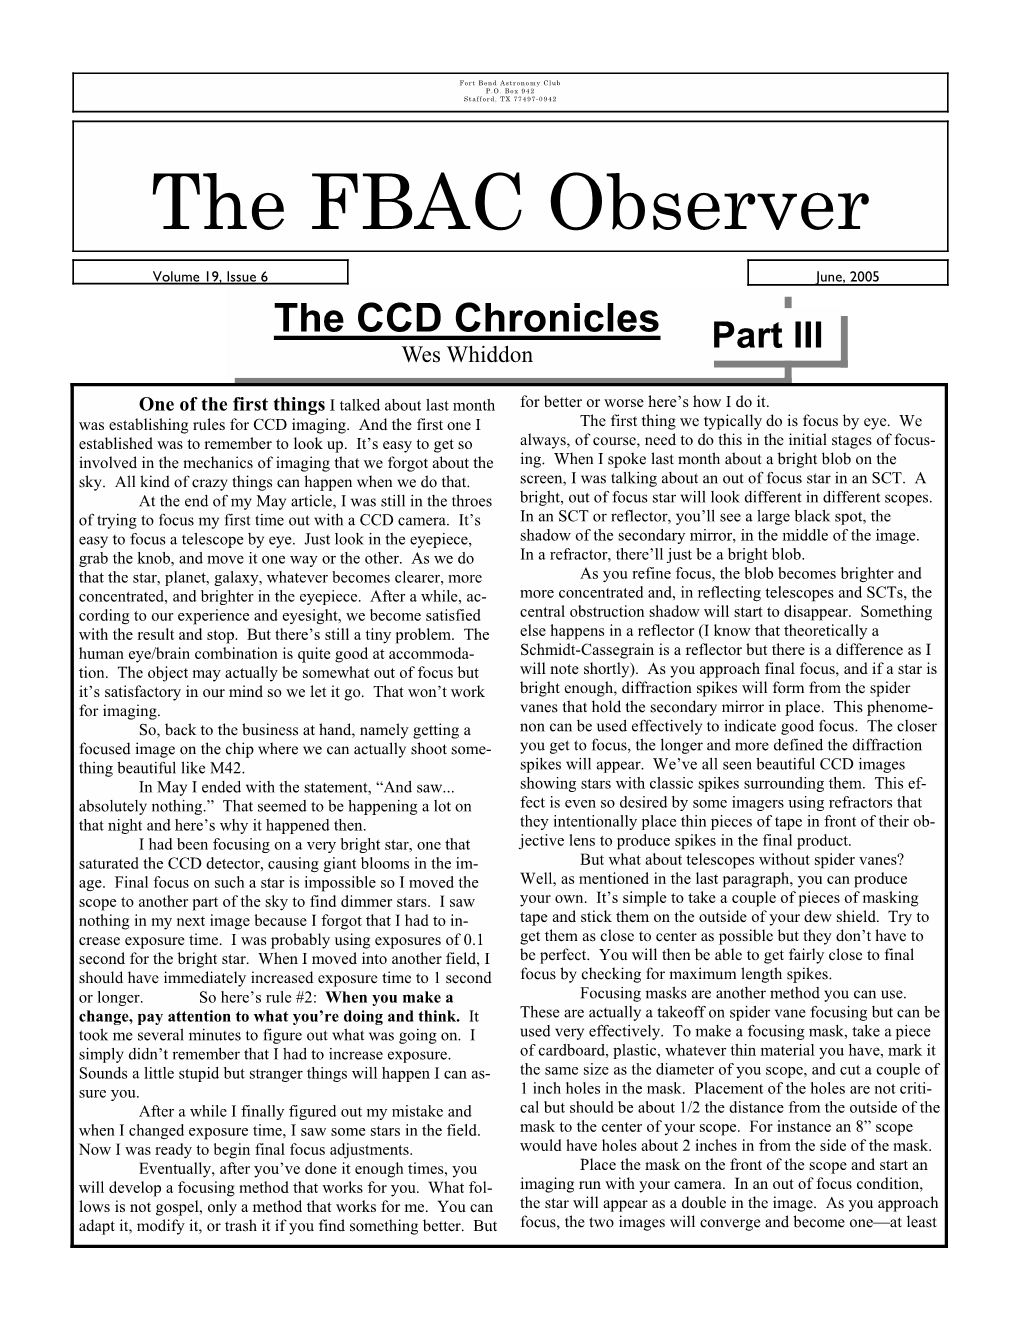 June, 2005 Observer